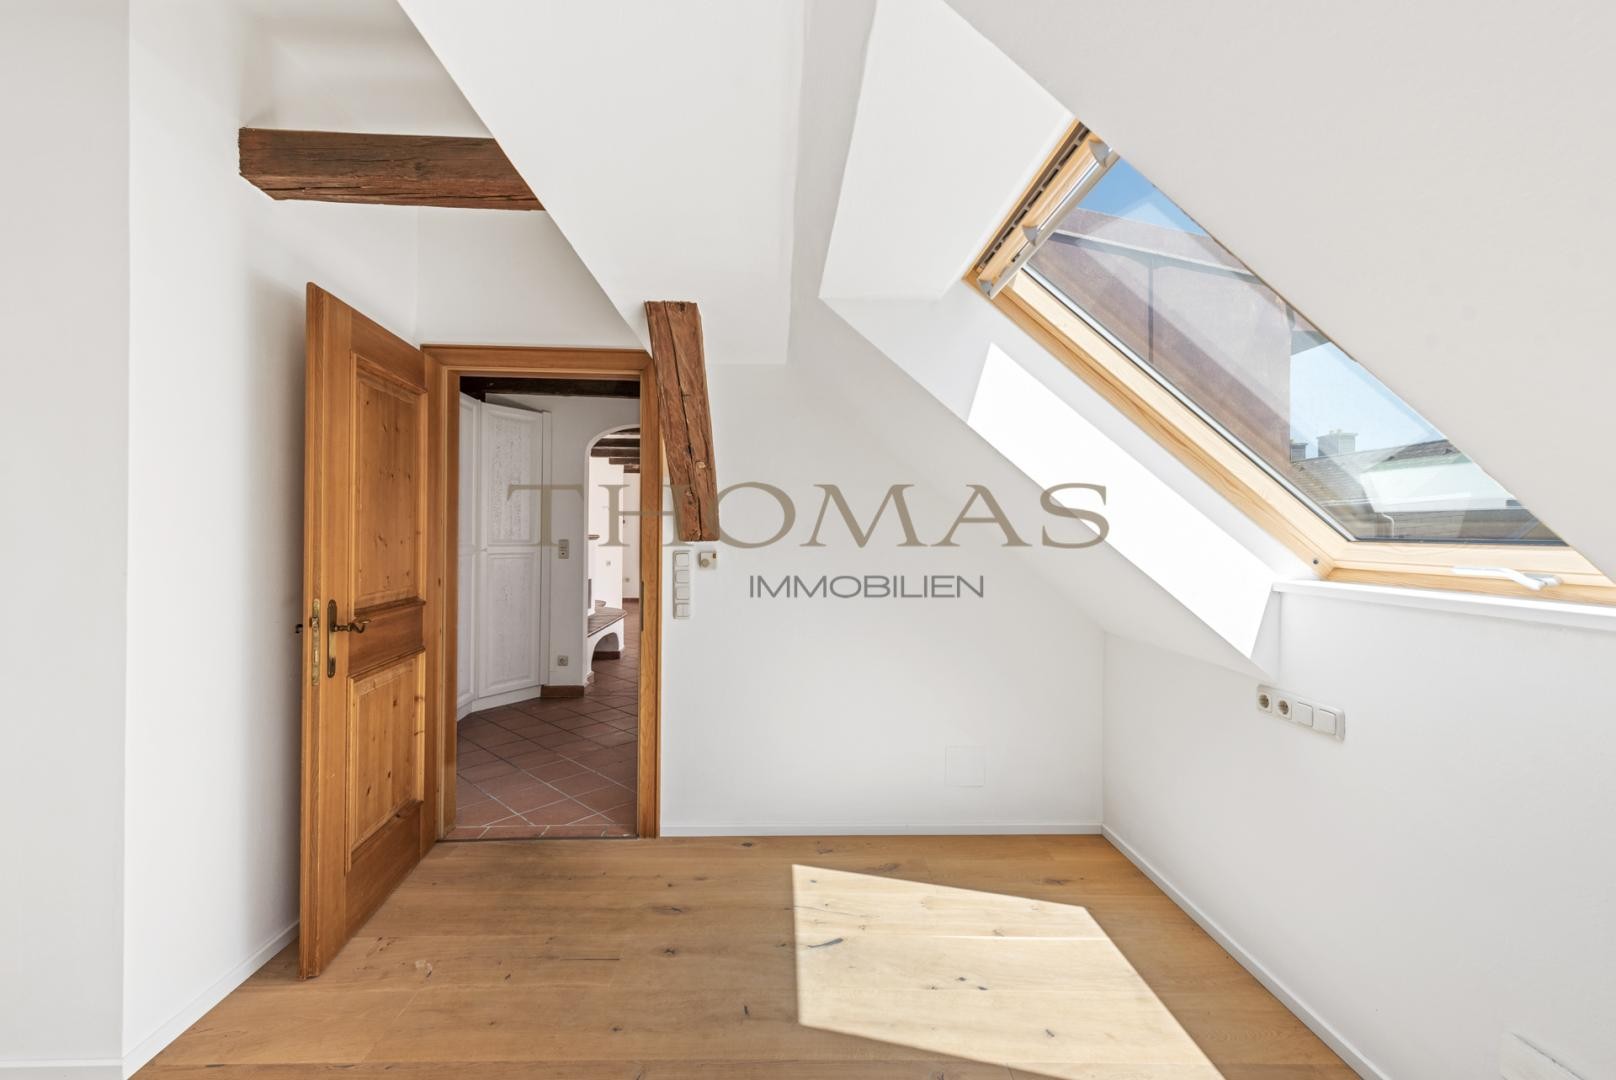 Thomas Immobilien -  Charmante 3-Zimmer Dachgeschosswohnung